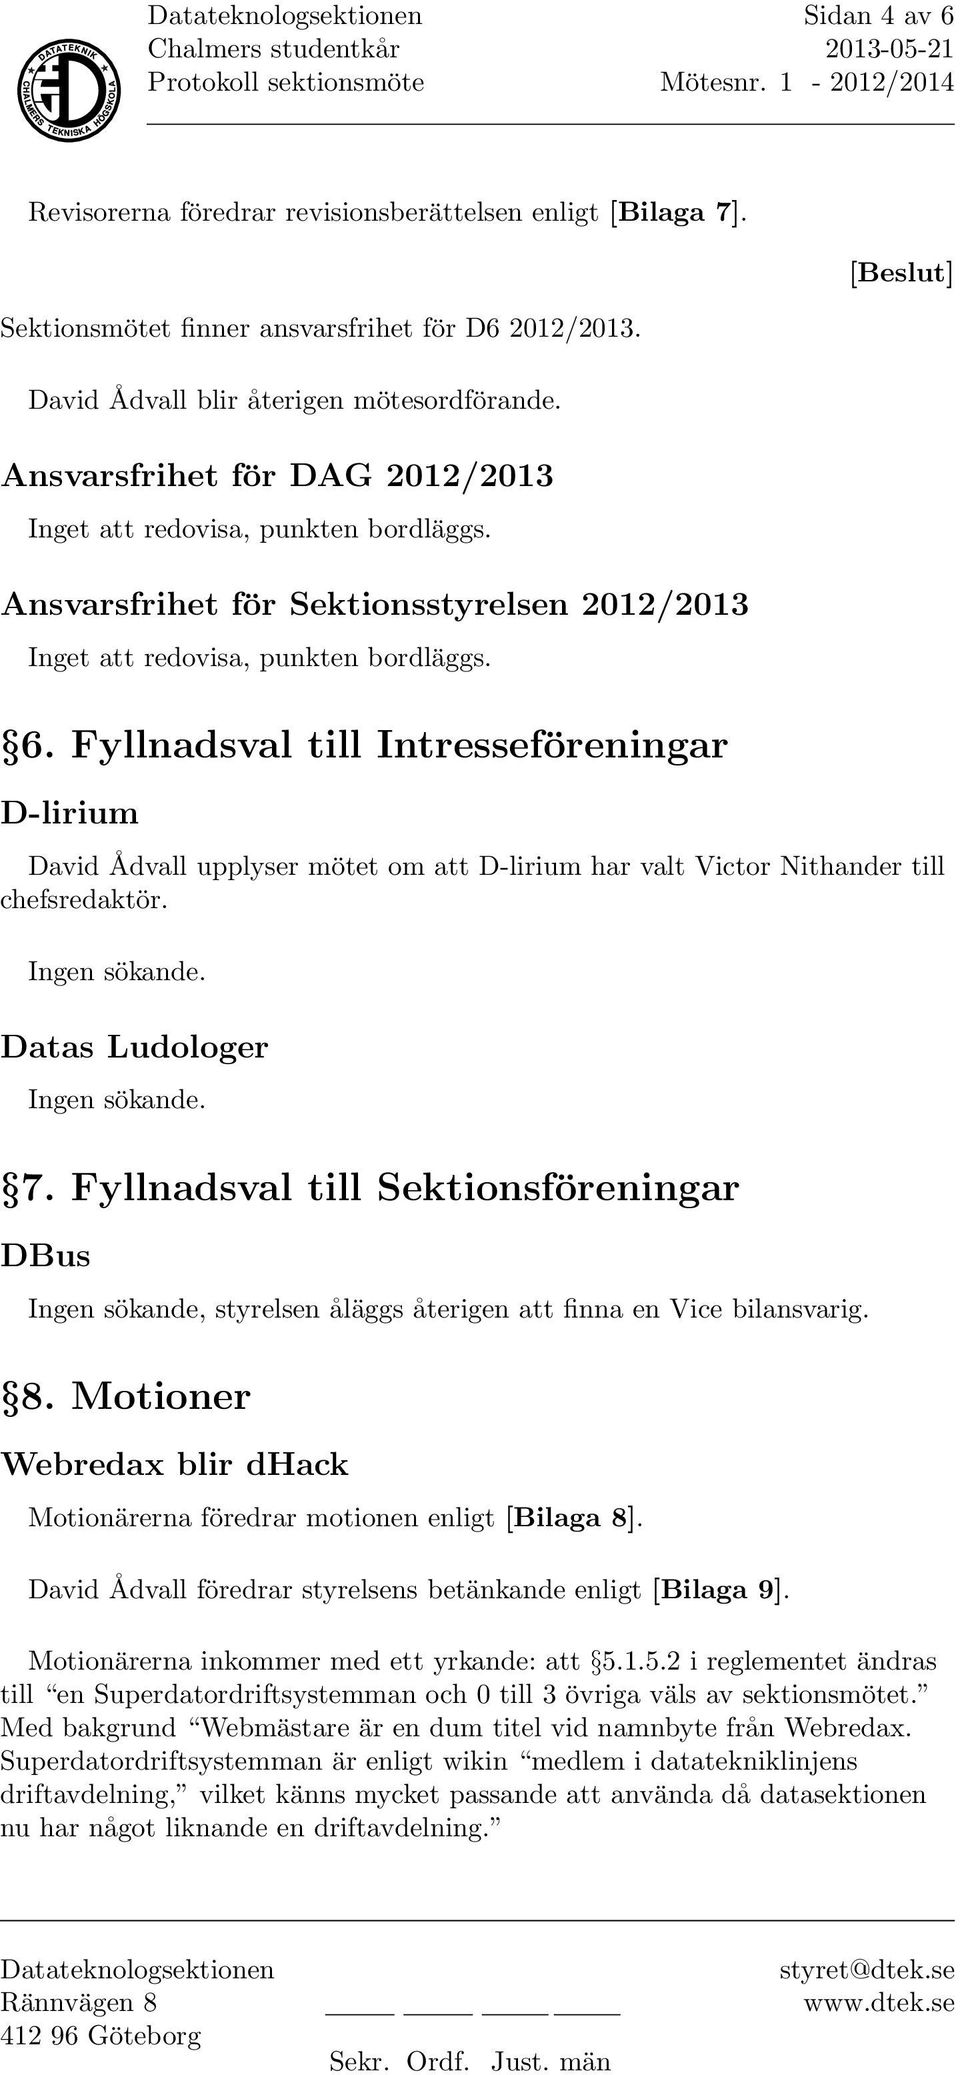 Fyllnadsval till Intresseföreningar D-lirium David Ådvall upplyser mötet om att D-lirium har valt Victor Nithander till chefsredaktör. Ingen sökande. Datas Ludologer Ingen sökande. 7.